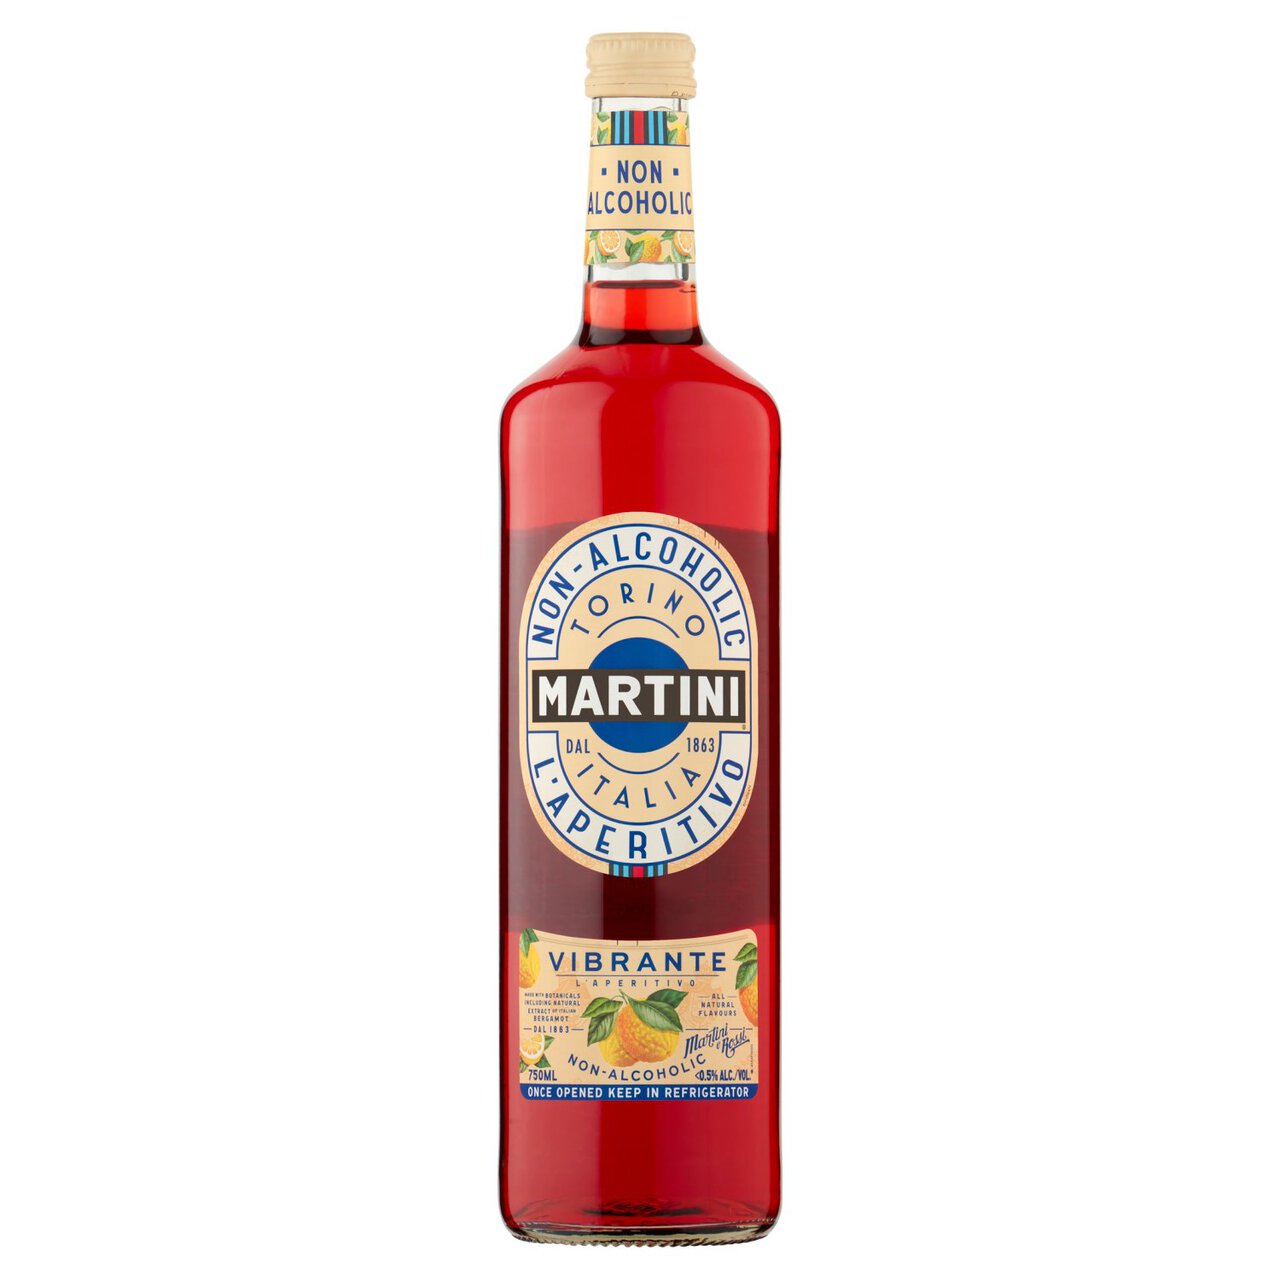 Martini Vibrante Non-Alcoholic Vermouth 75cl